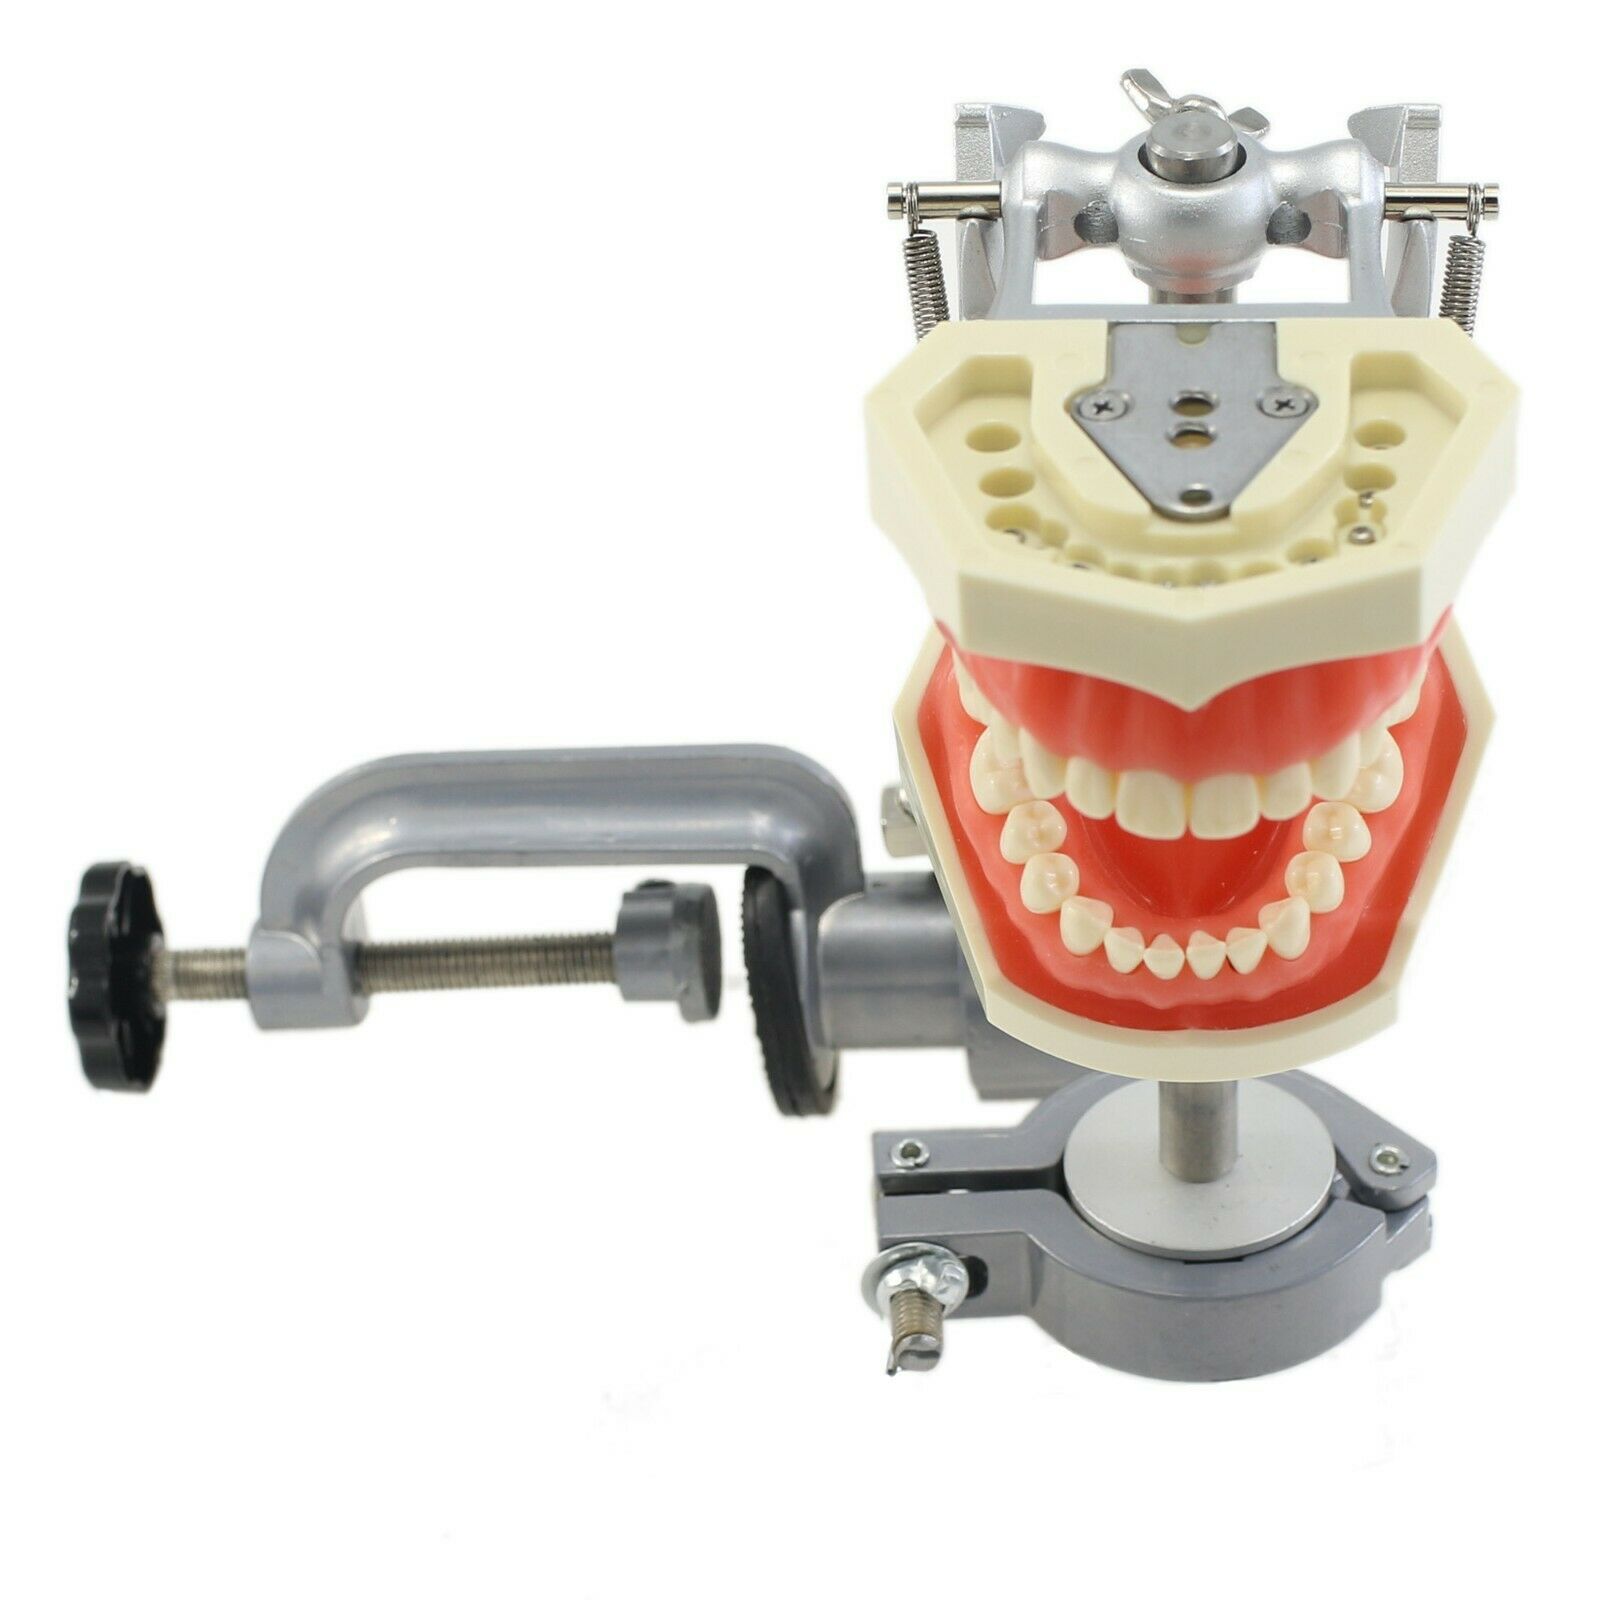 Dental Typodont com poste de montagem com modelo 28pcsTeeth compatível com o Kilgore Nissin 200